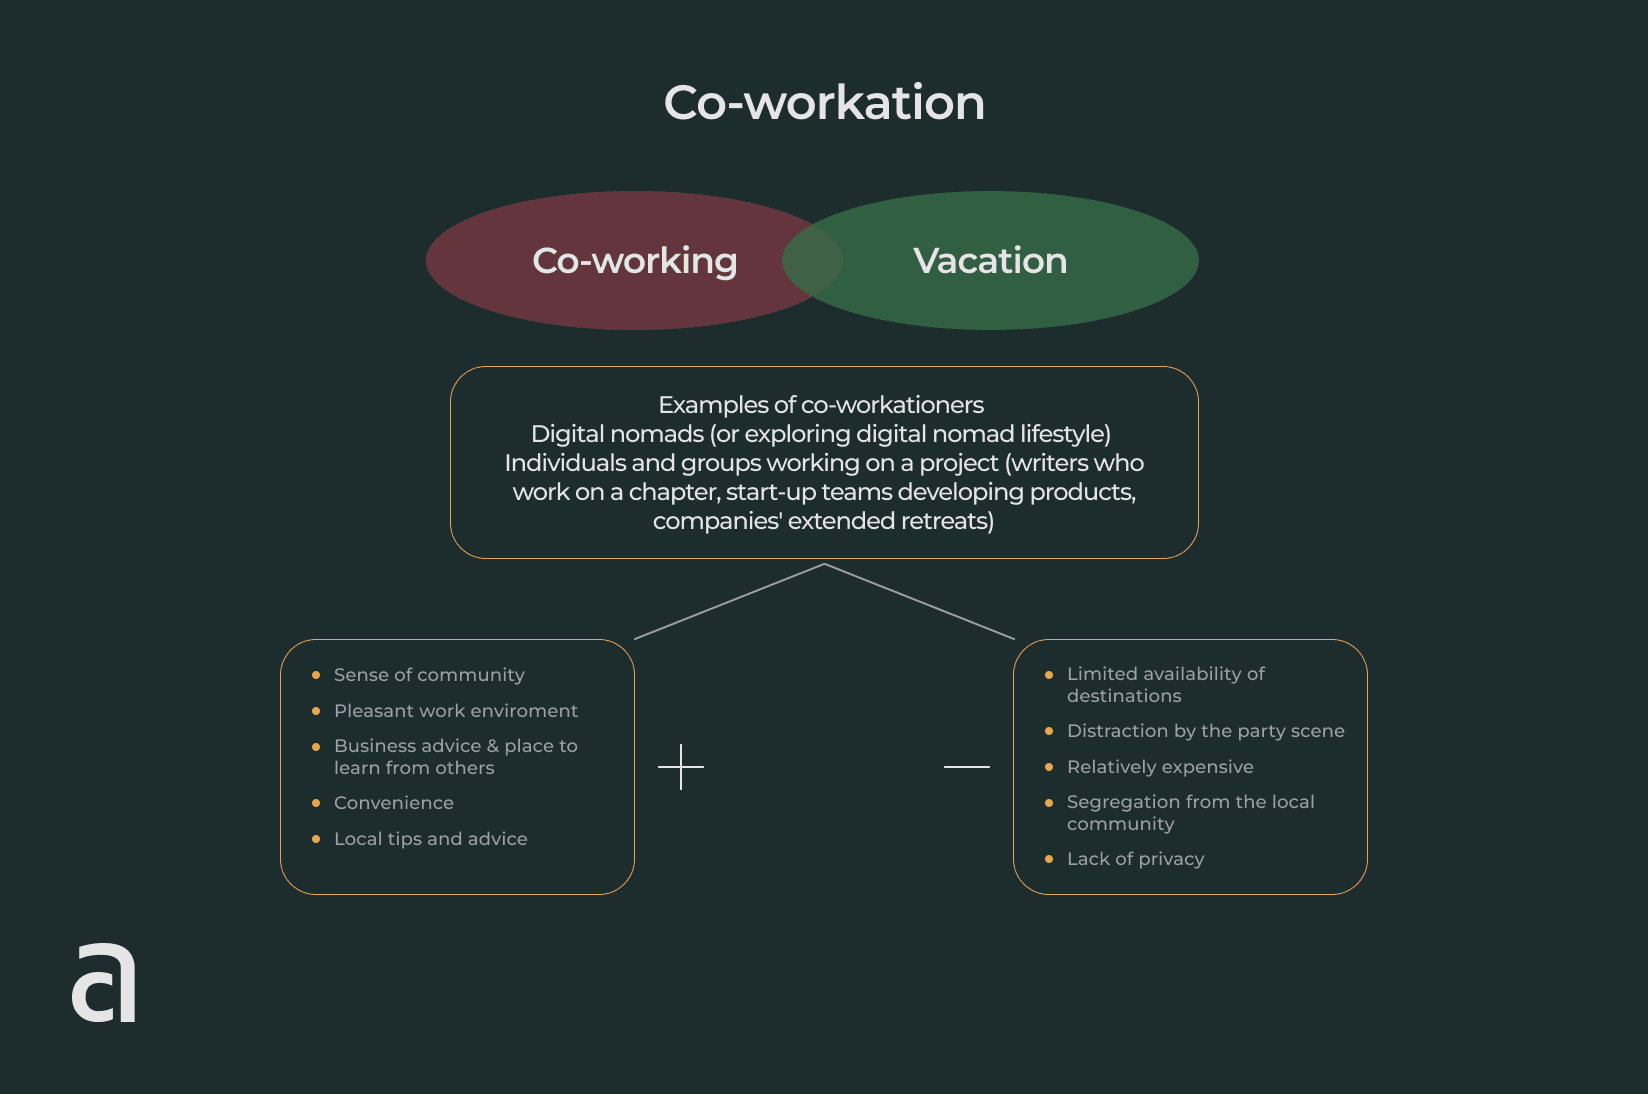 Co-workation scheme